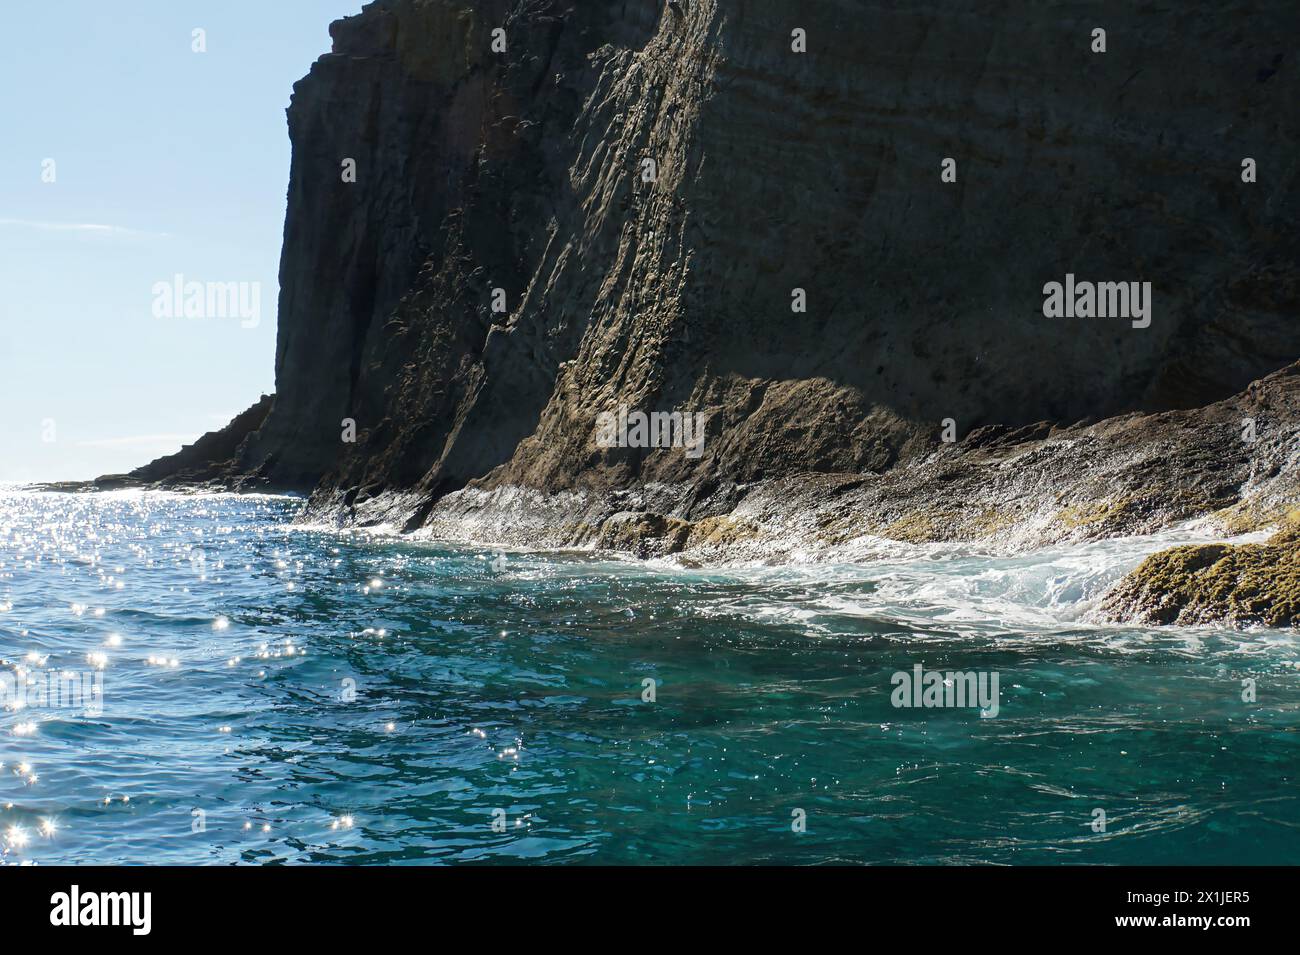 Detalhes da viagem de barco para o Ilhéu das Cabras em Ilha Terceira - Azzorre Foto Stock